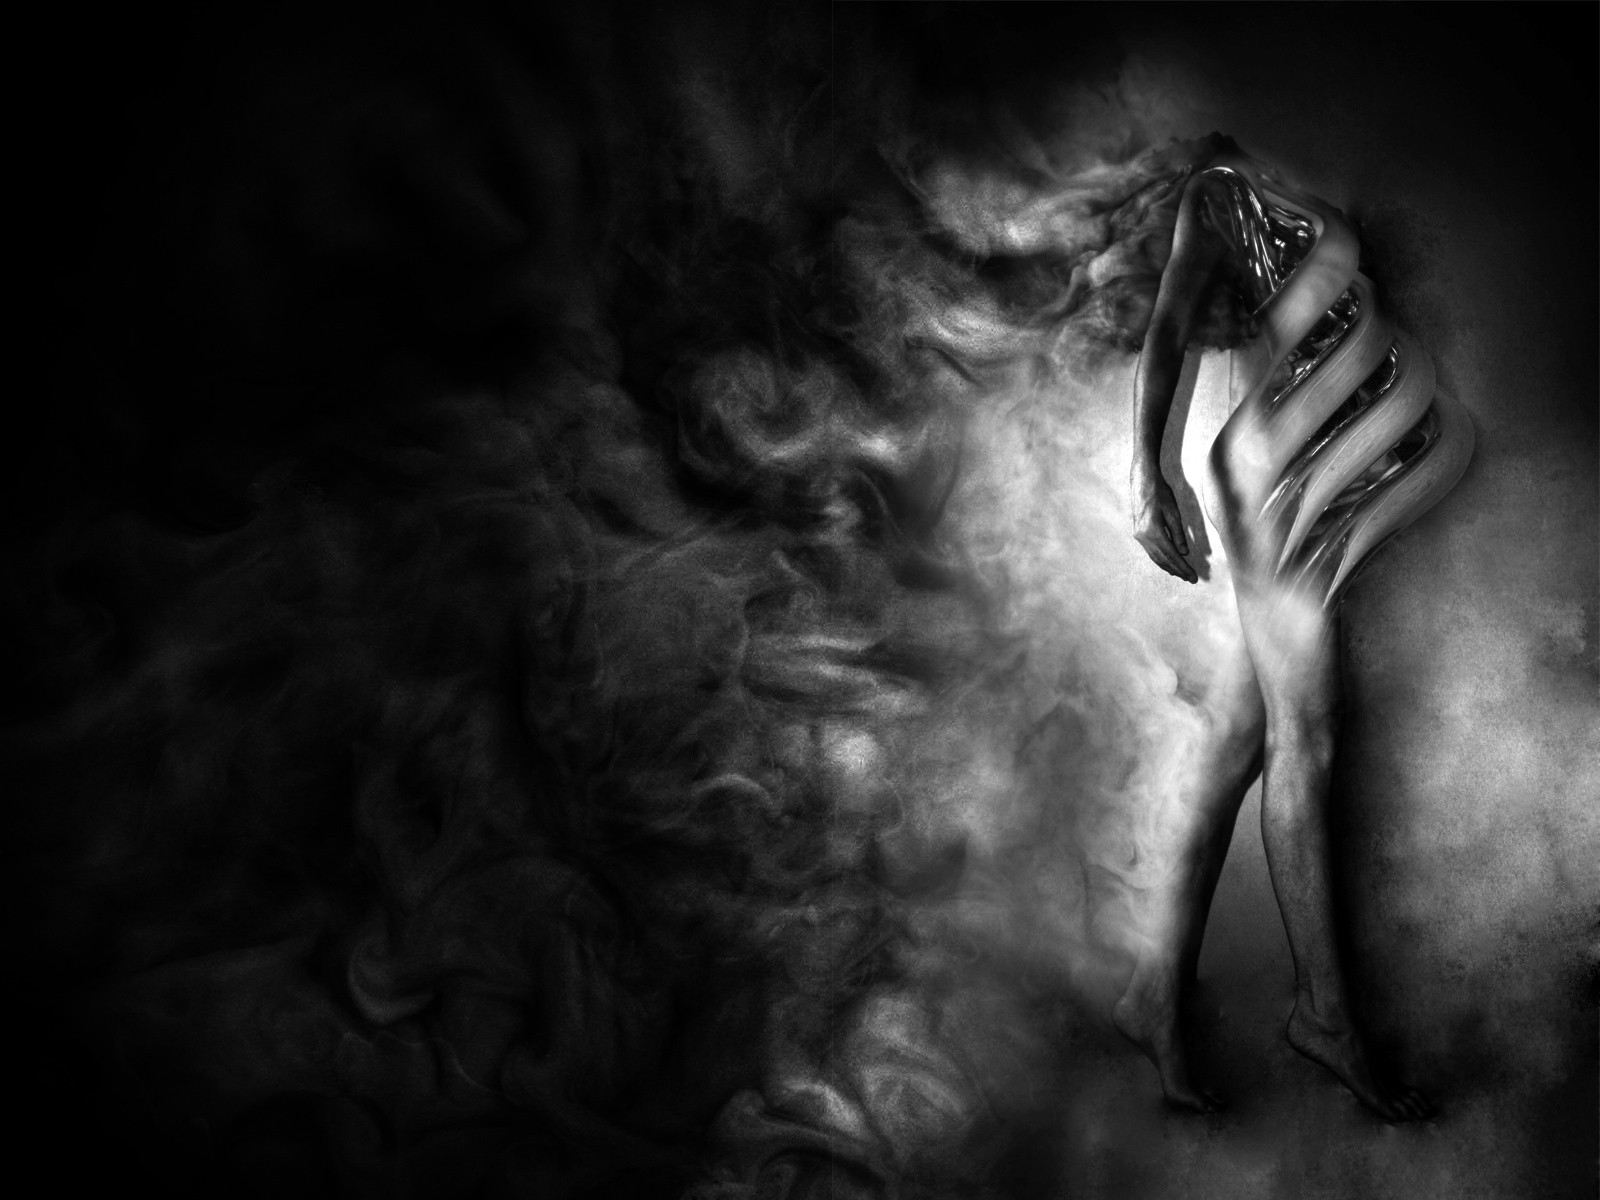 Снимки обнаженной студентки в душе в черно-белых тонах